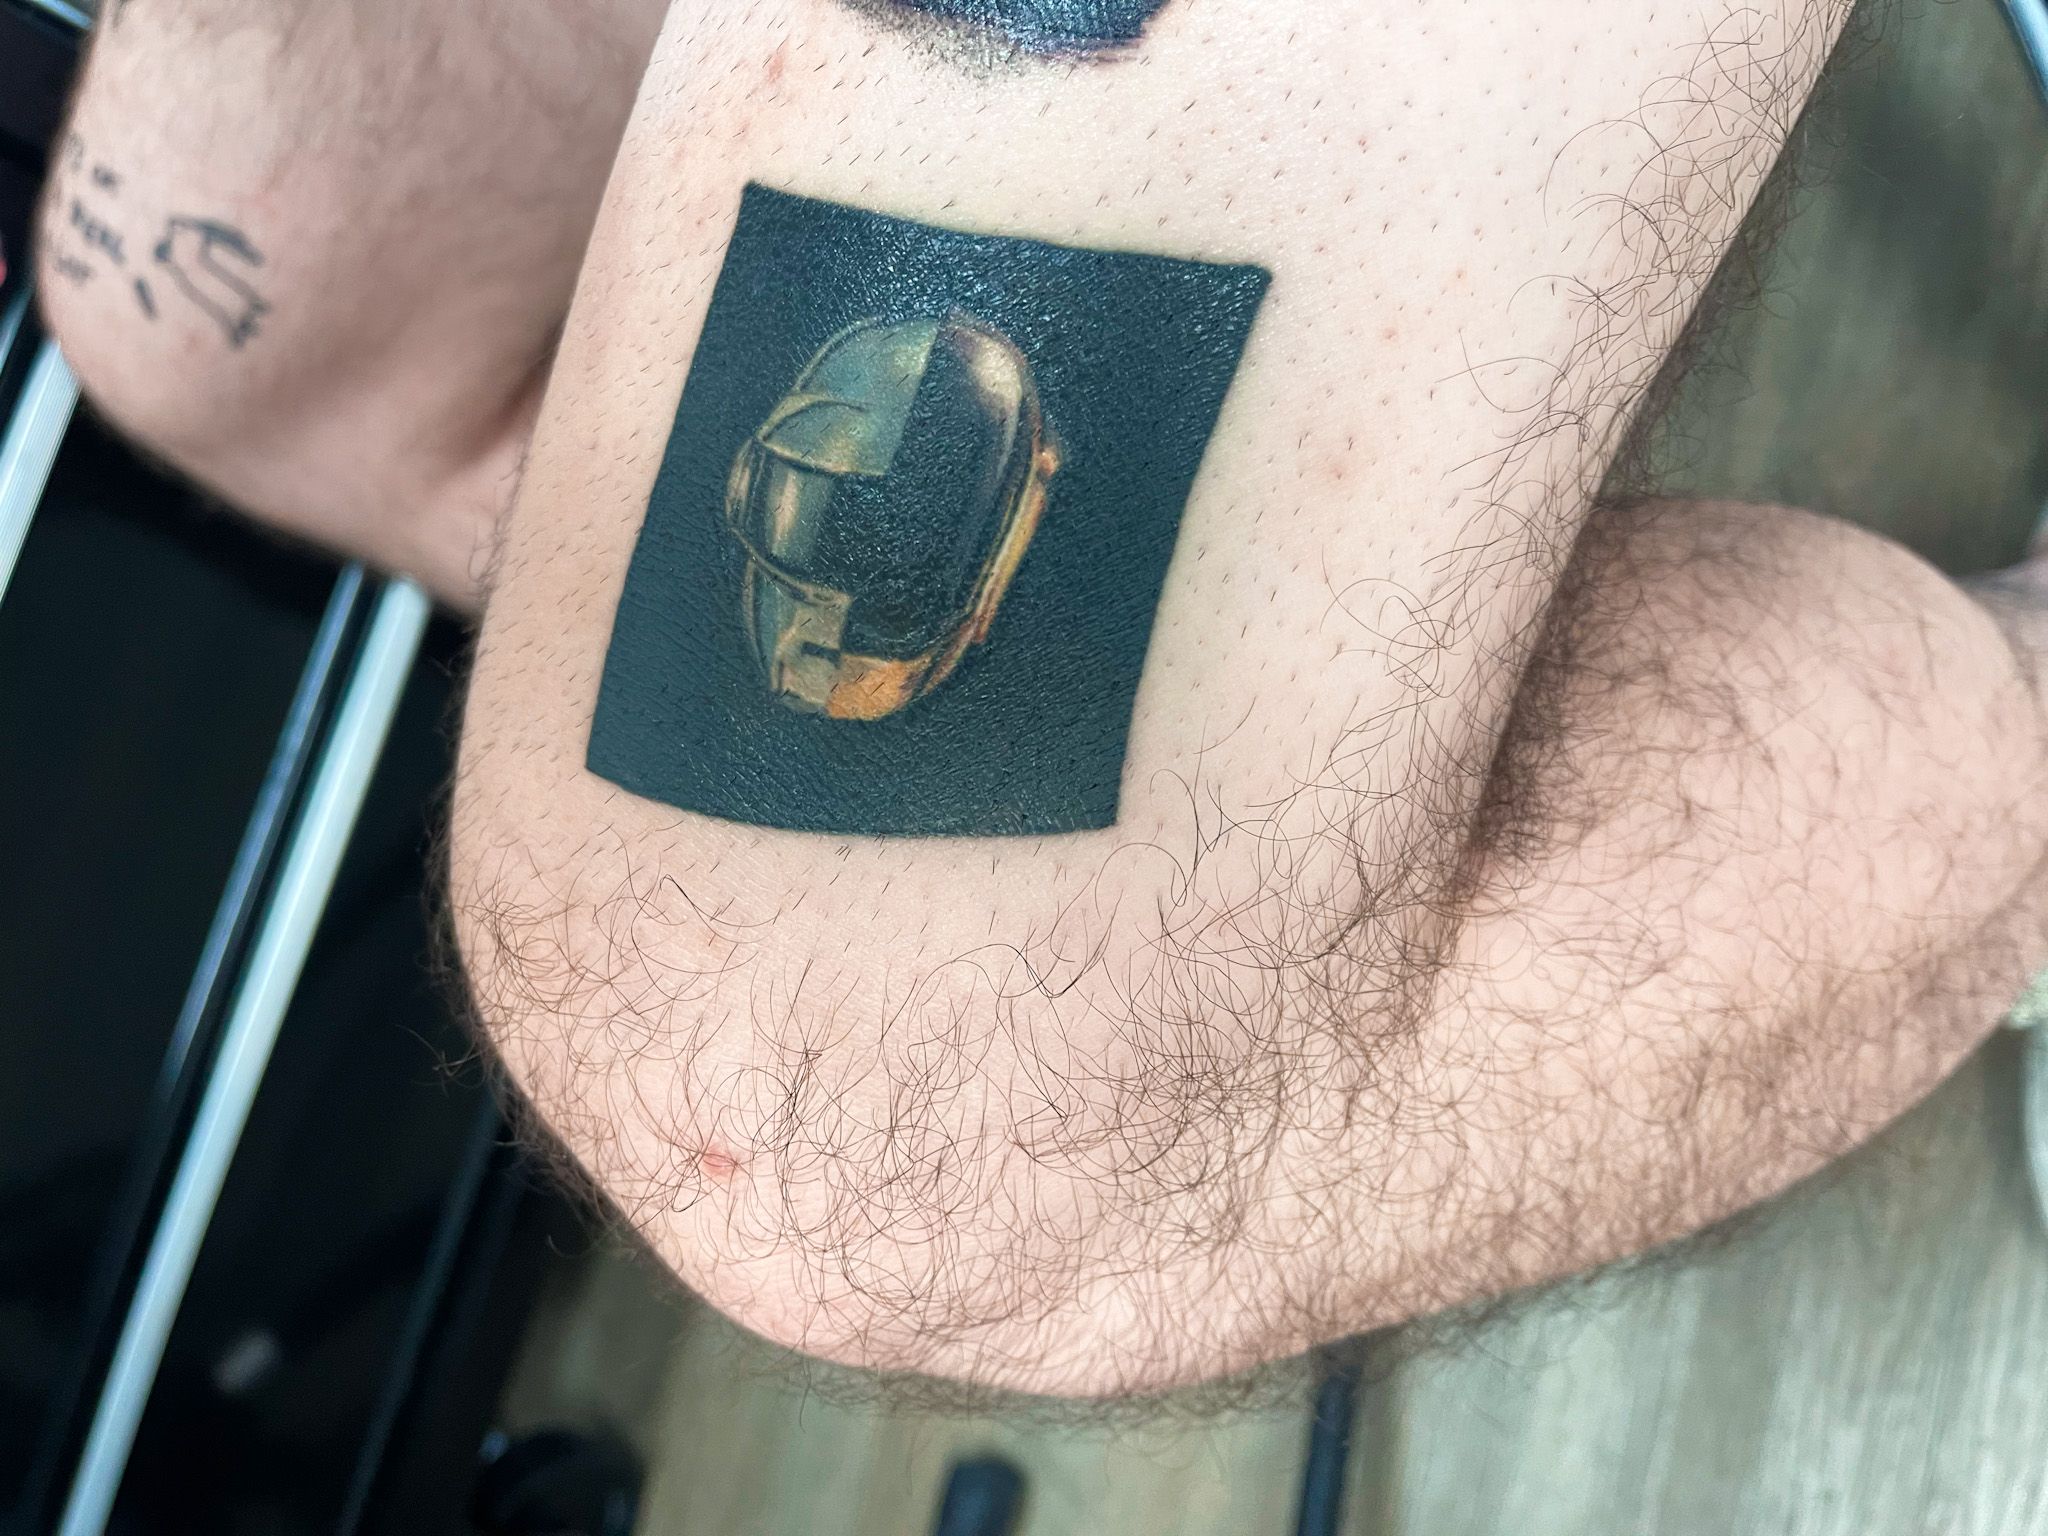 Tattooantra on Twitter Little Daft Punk tribute piece done by Alper  Firatli Ritual Tattoo San Francisco httpstco4lKMLW8E2w  httpstcoN9LSxLM36V  Twitter